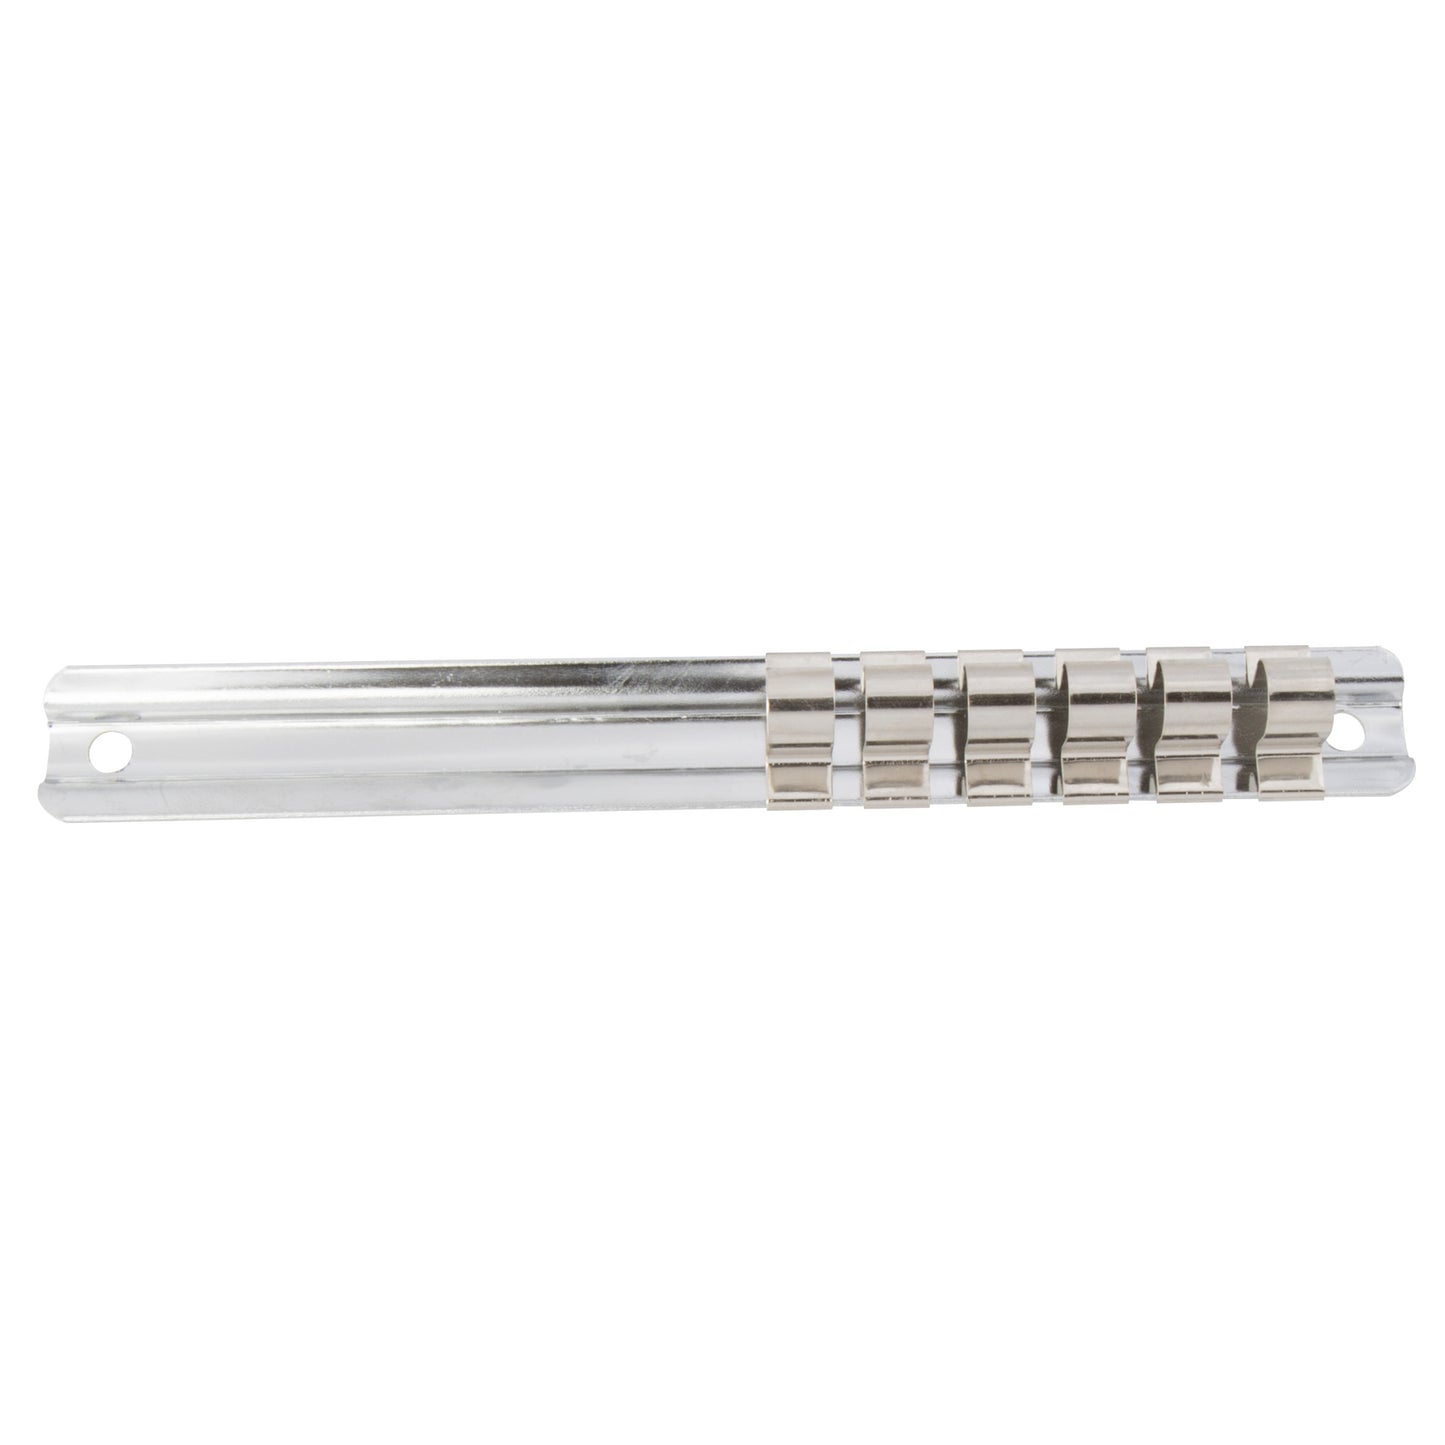 7-inch Long 6-Peg 3/8-inch Drive Steel Socket Rail